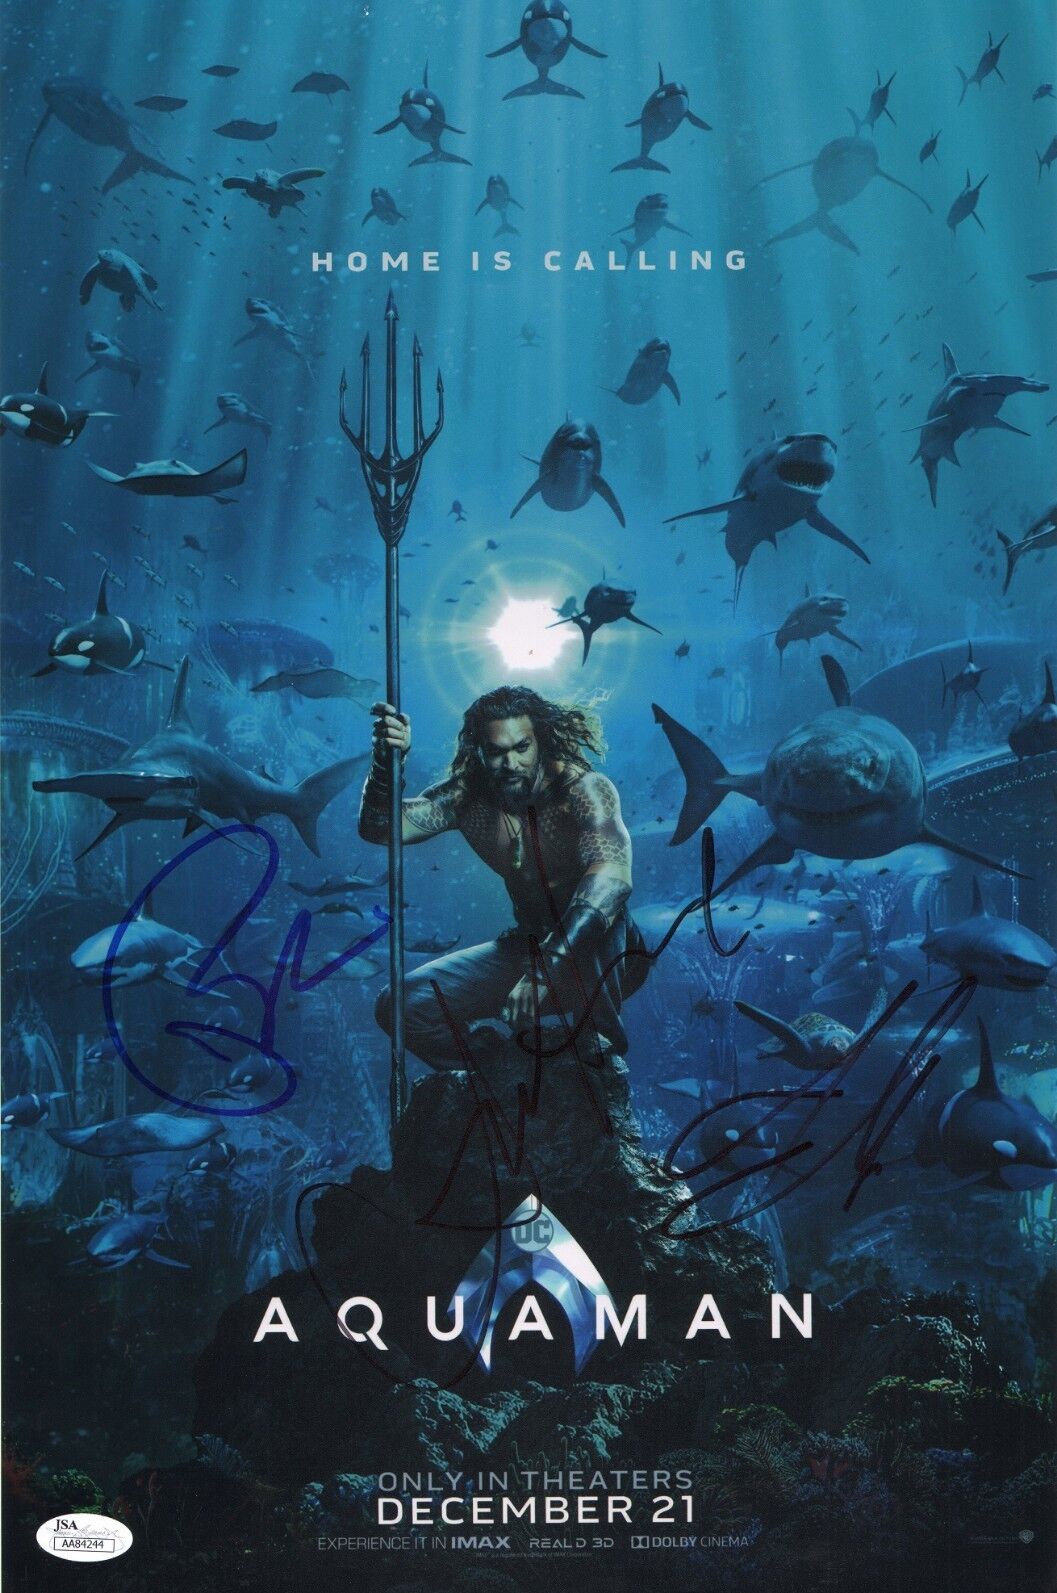 AQUAMAN Cast X3 Authentic Signed JASON MOMOA 11x17 Photo Poster painting (JSA COA)